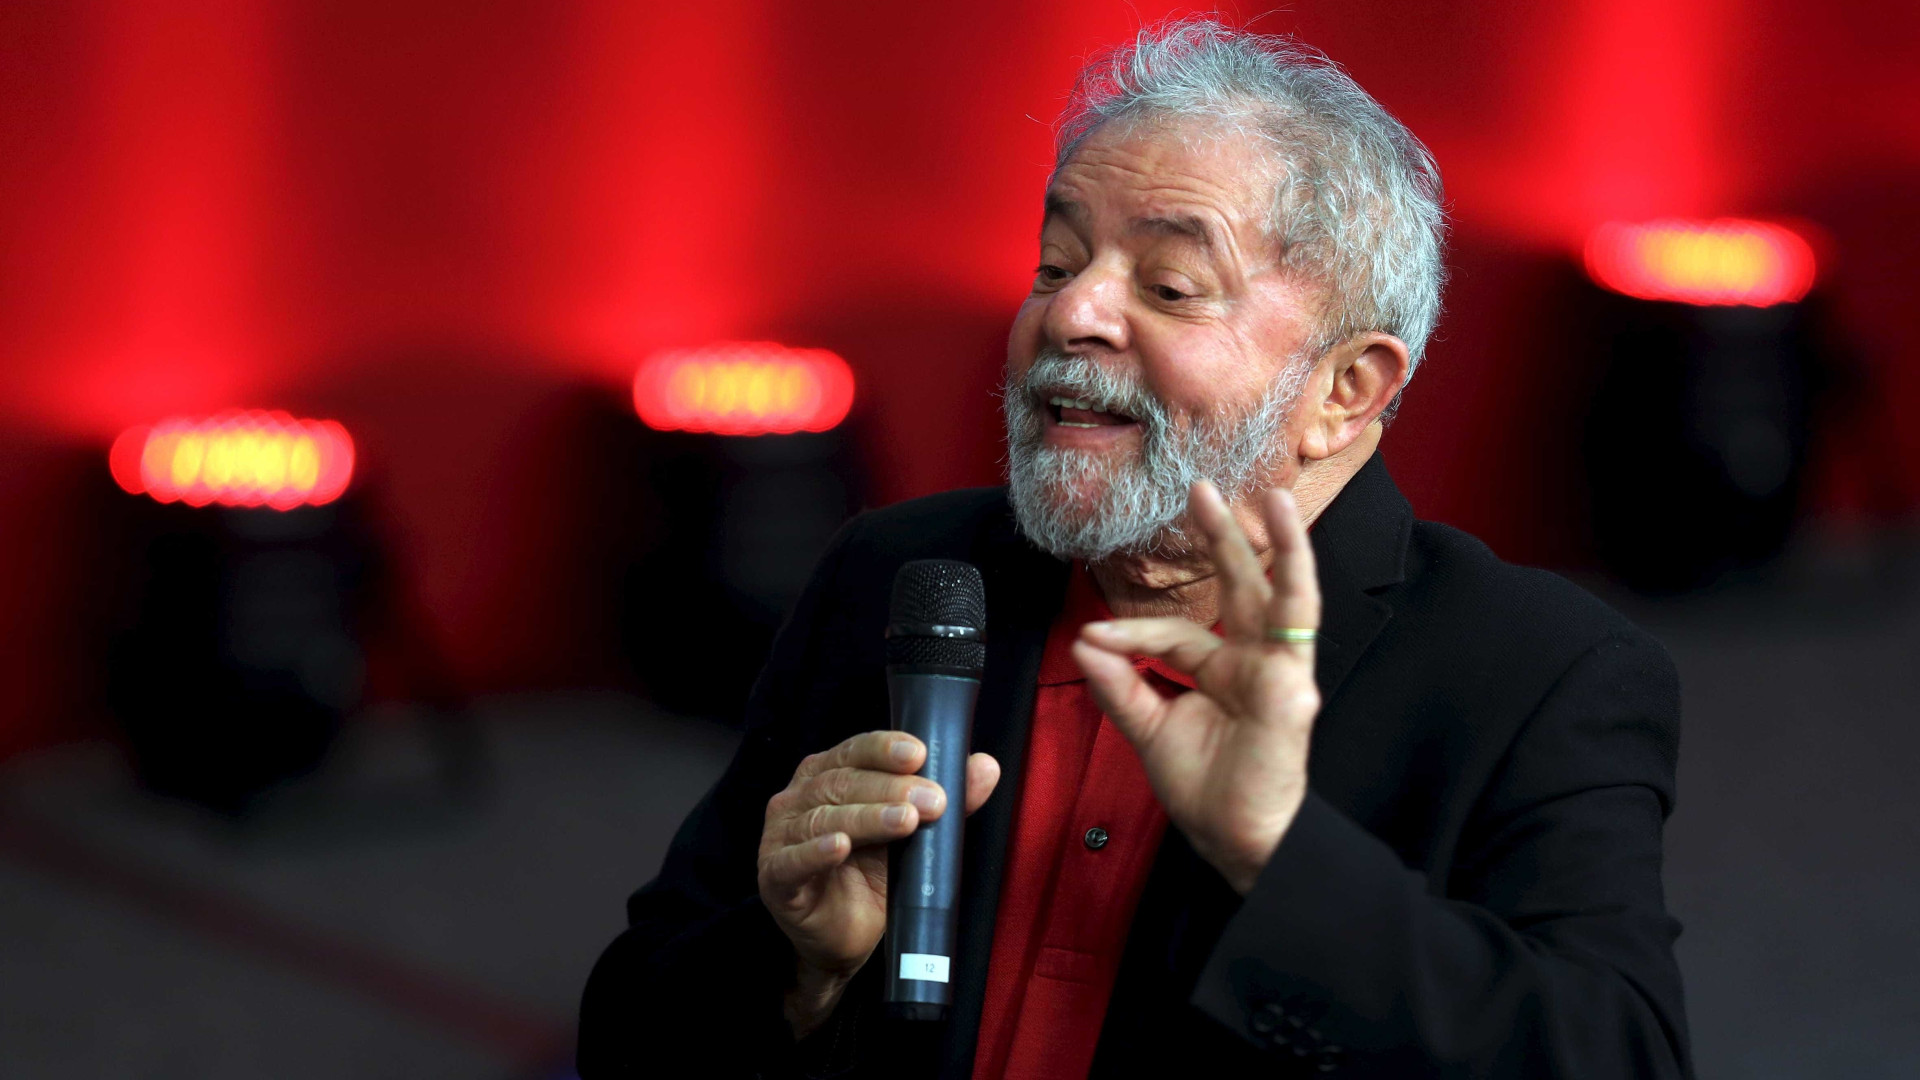 Preso hÃ¡ 100 dias, Lula diz em vÃ­deo ser 'sonho de consumo de Moro'